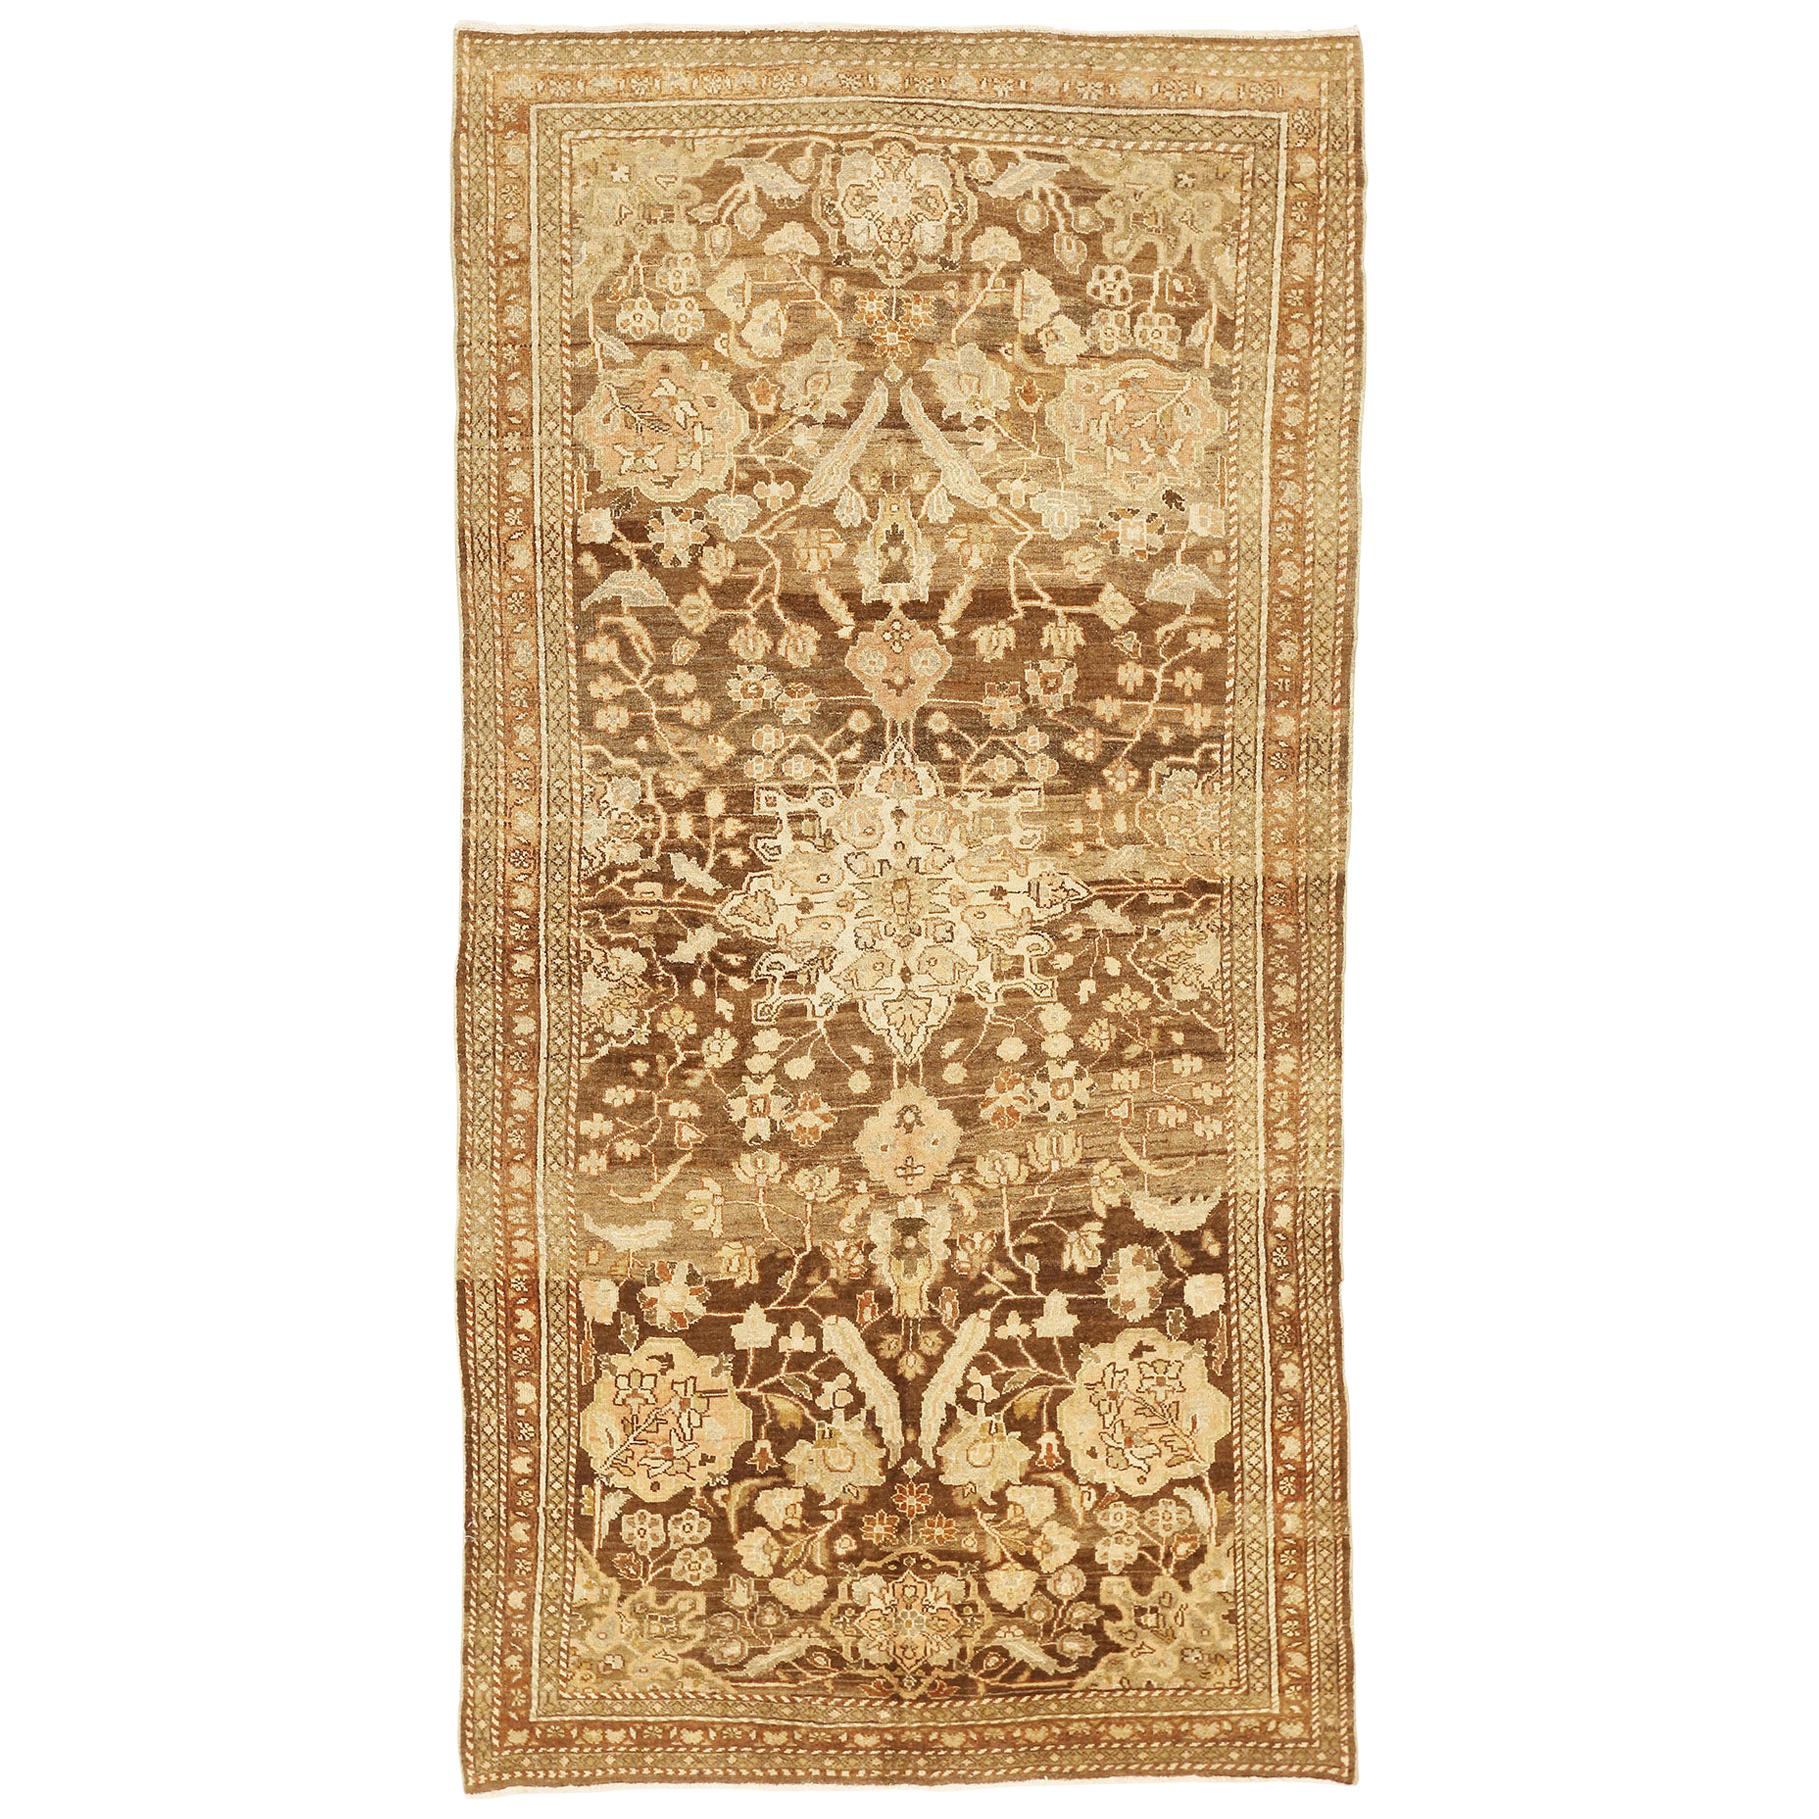 Antiker persischer Mahal-Teppich mit elfenbeinfarbenen und grauen Blumendetails auf braunem Feld